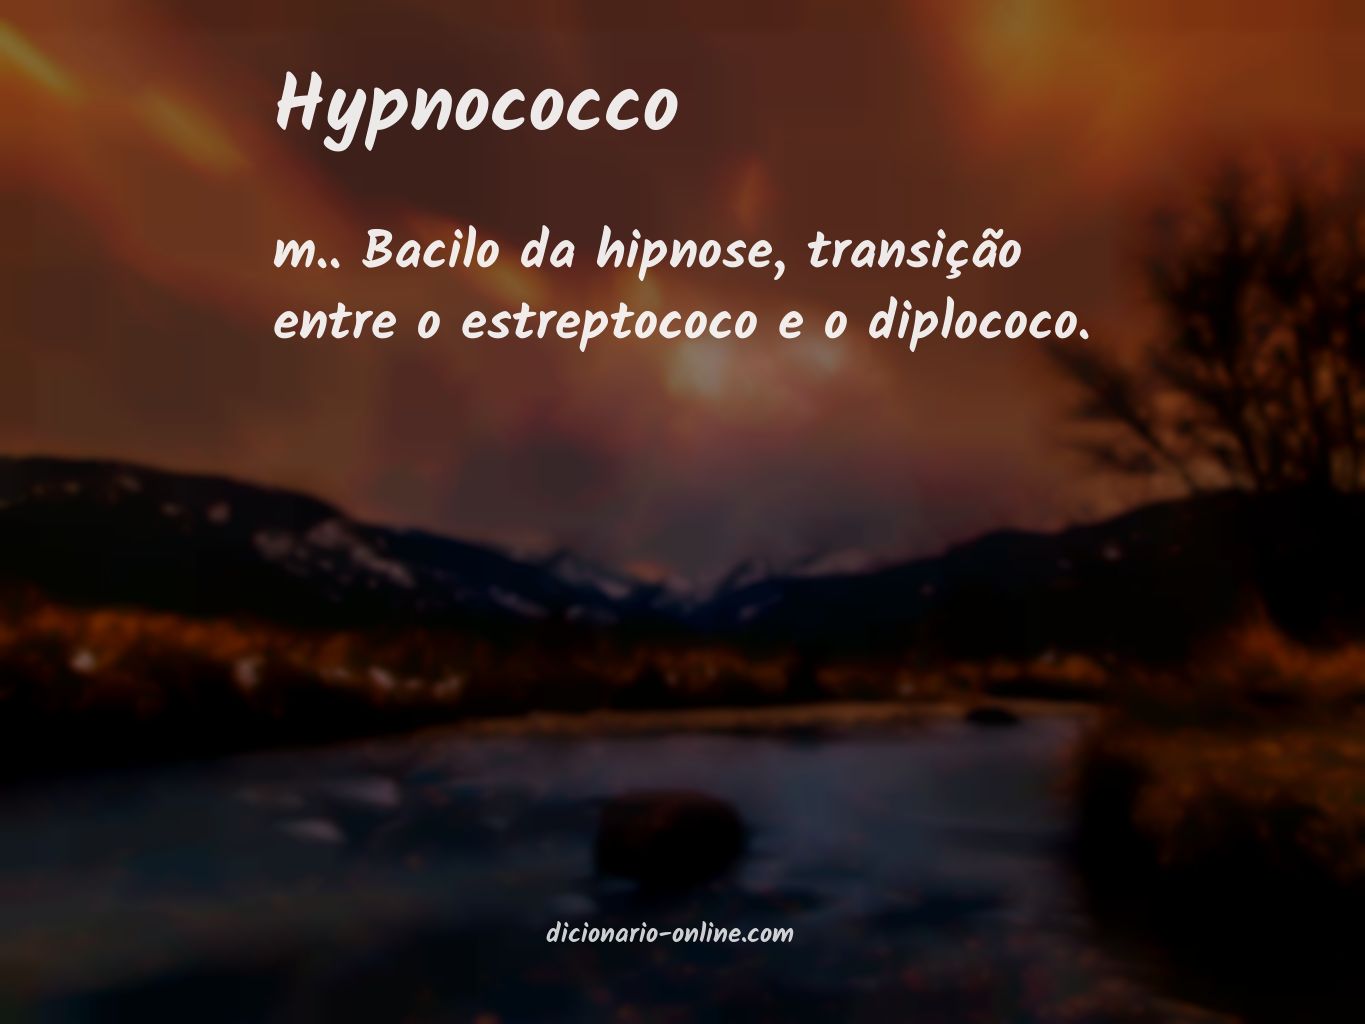 Significado de hypnococco